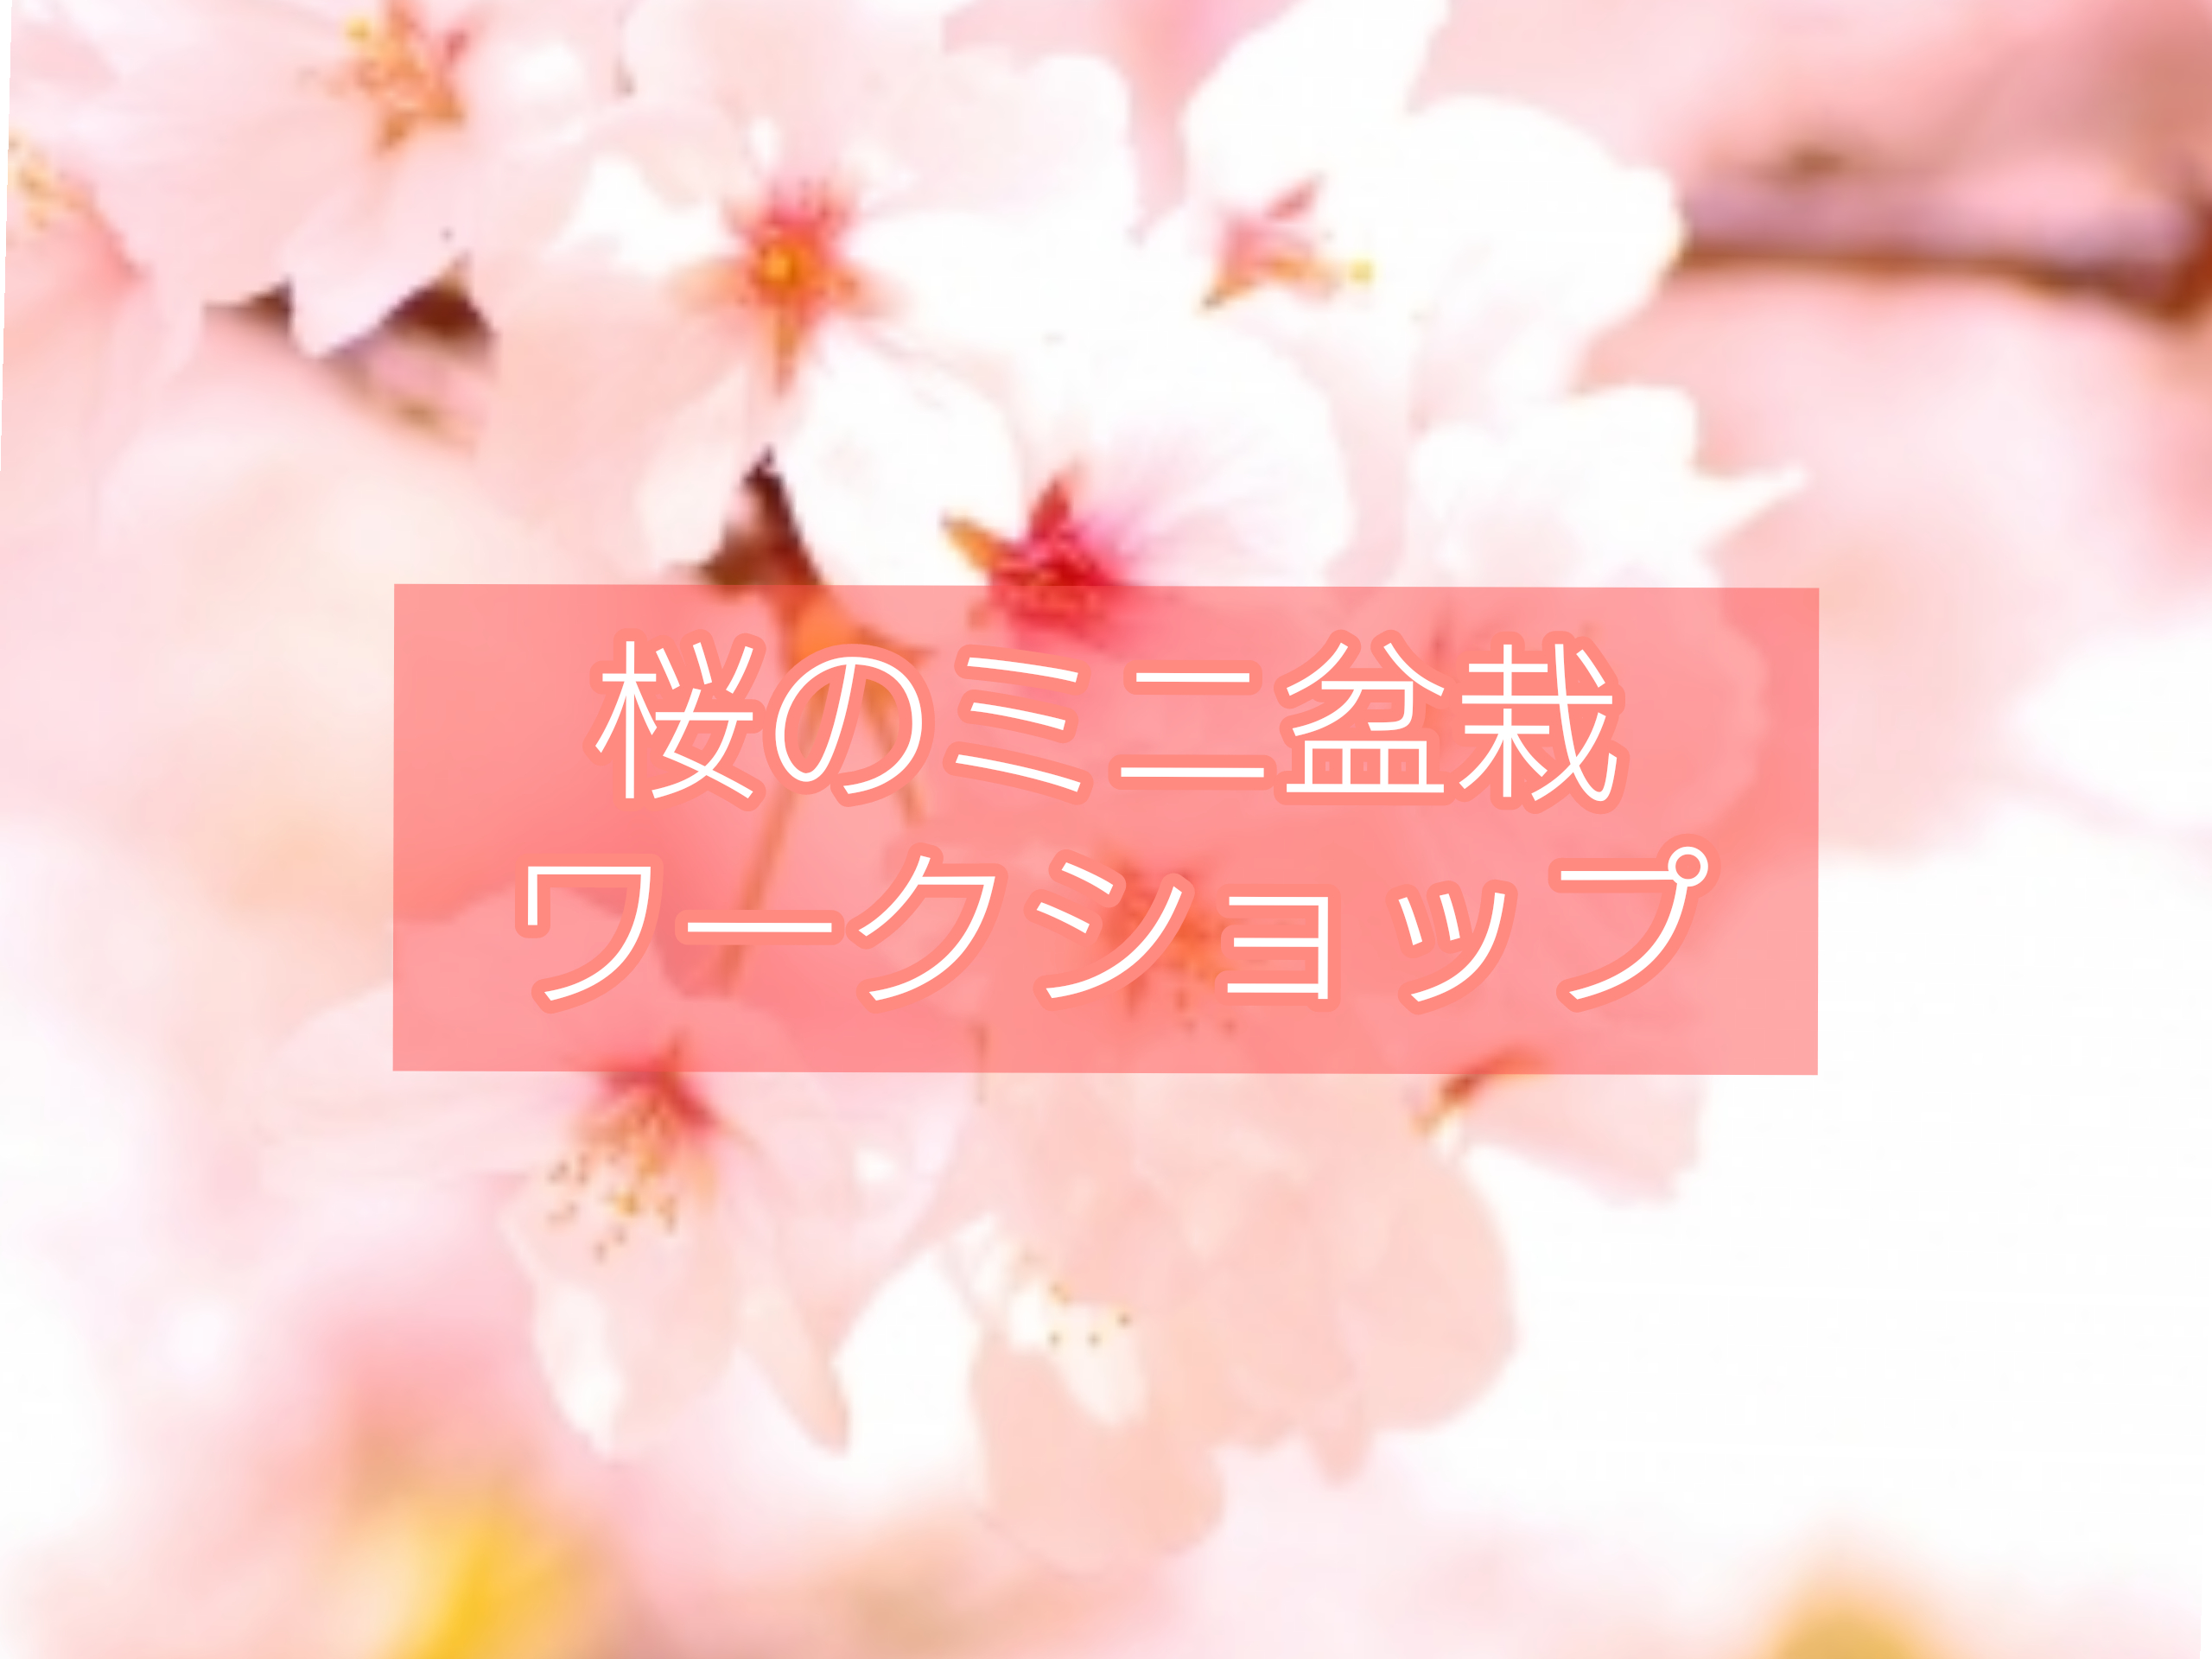 3 14 日 桜のミニ盆栽ワークショップ ギャラリー秀 たまプラーザのハウスギャラリー